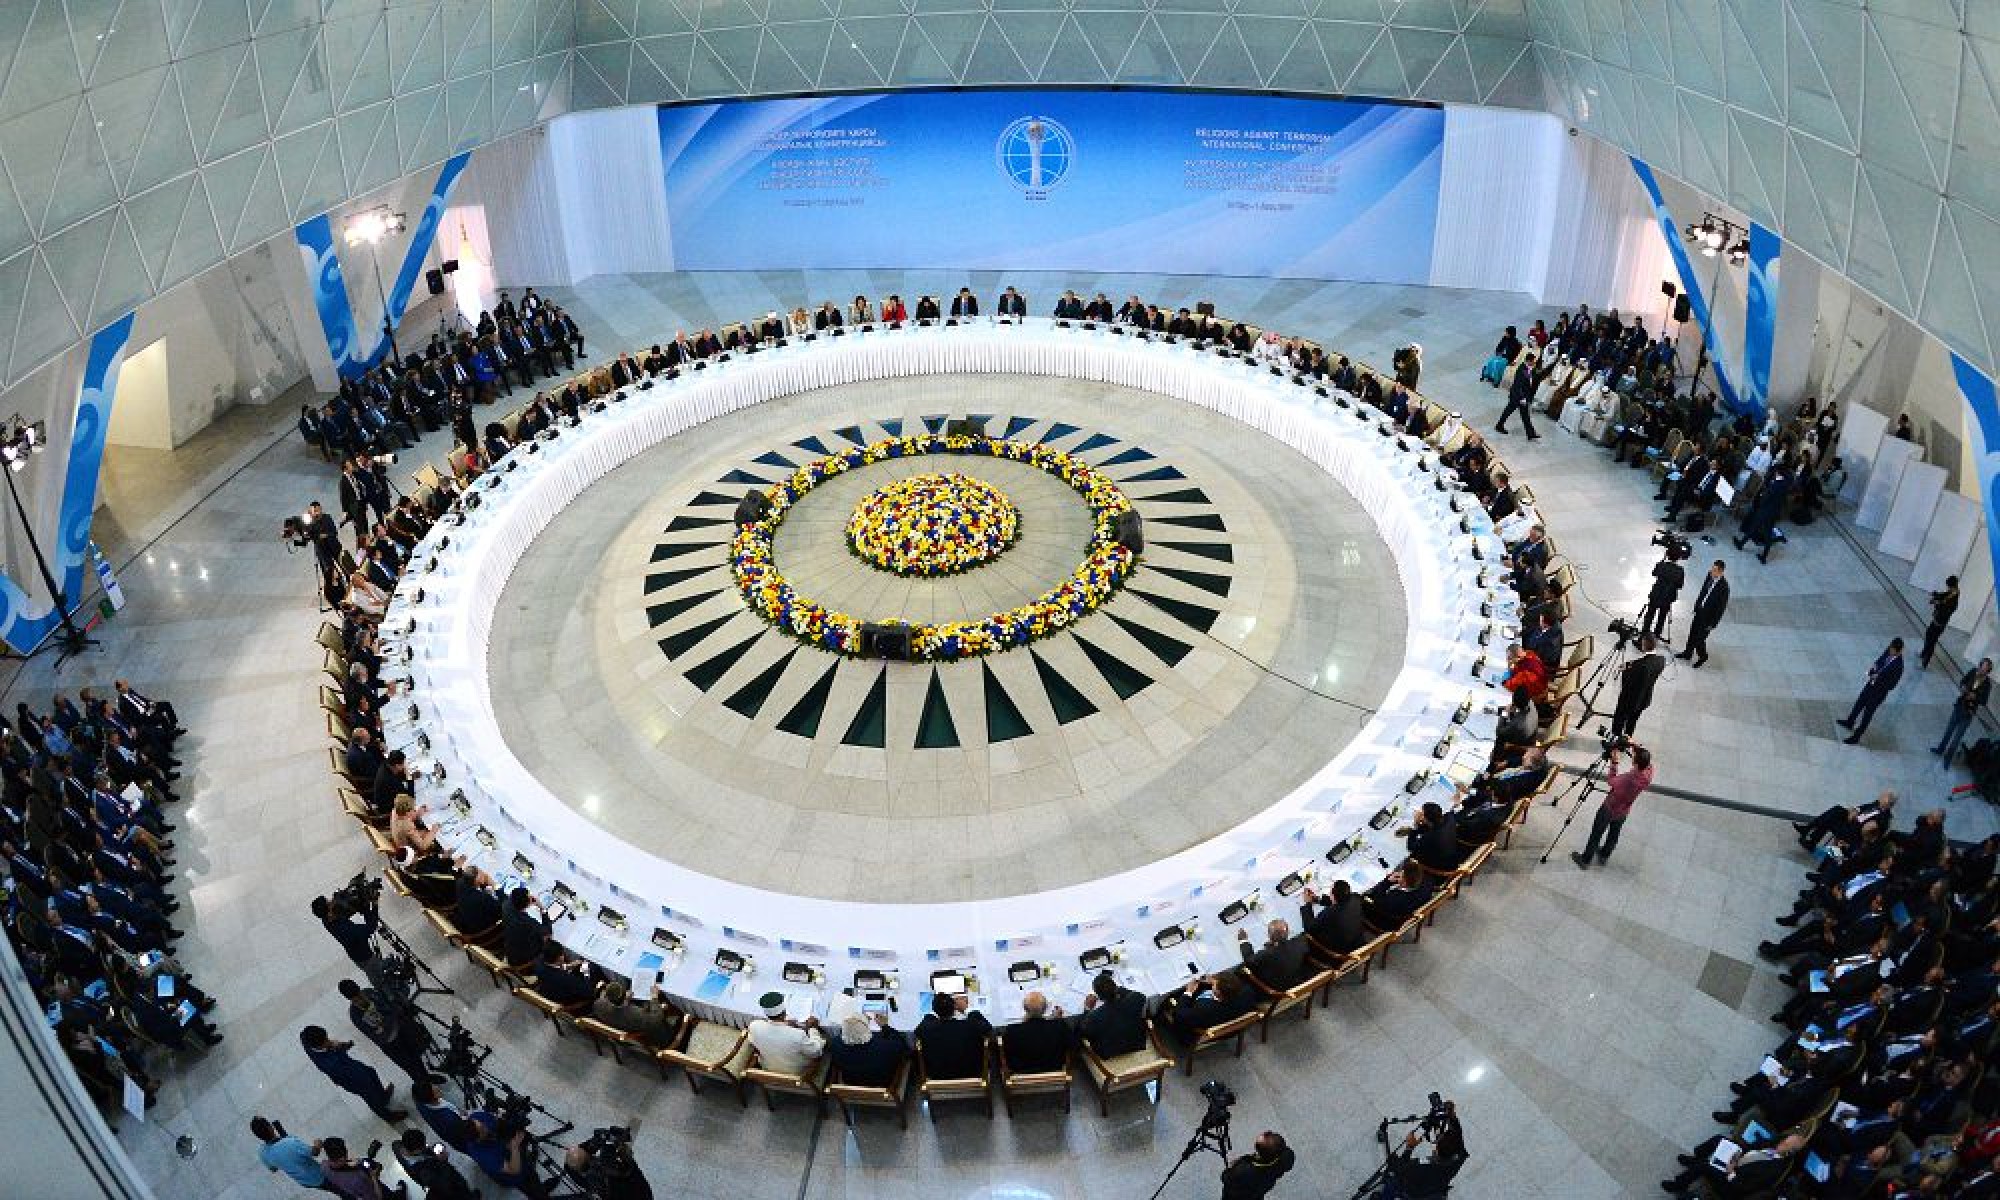 Вопросы безопасного мира обсудят в Астане религиозные лидеры - Дархан Калетаев 